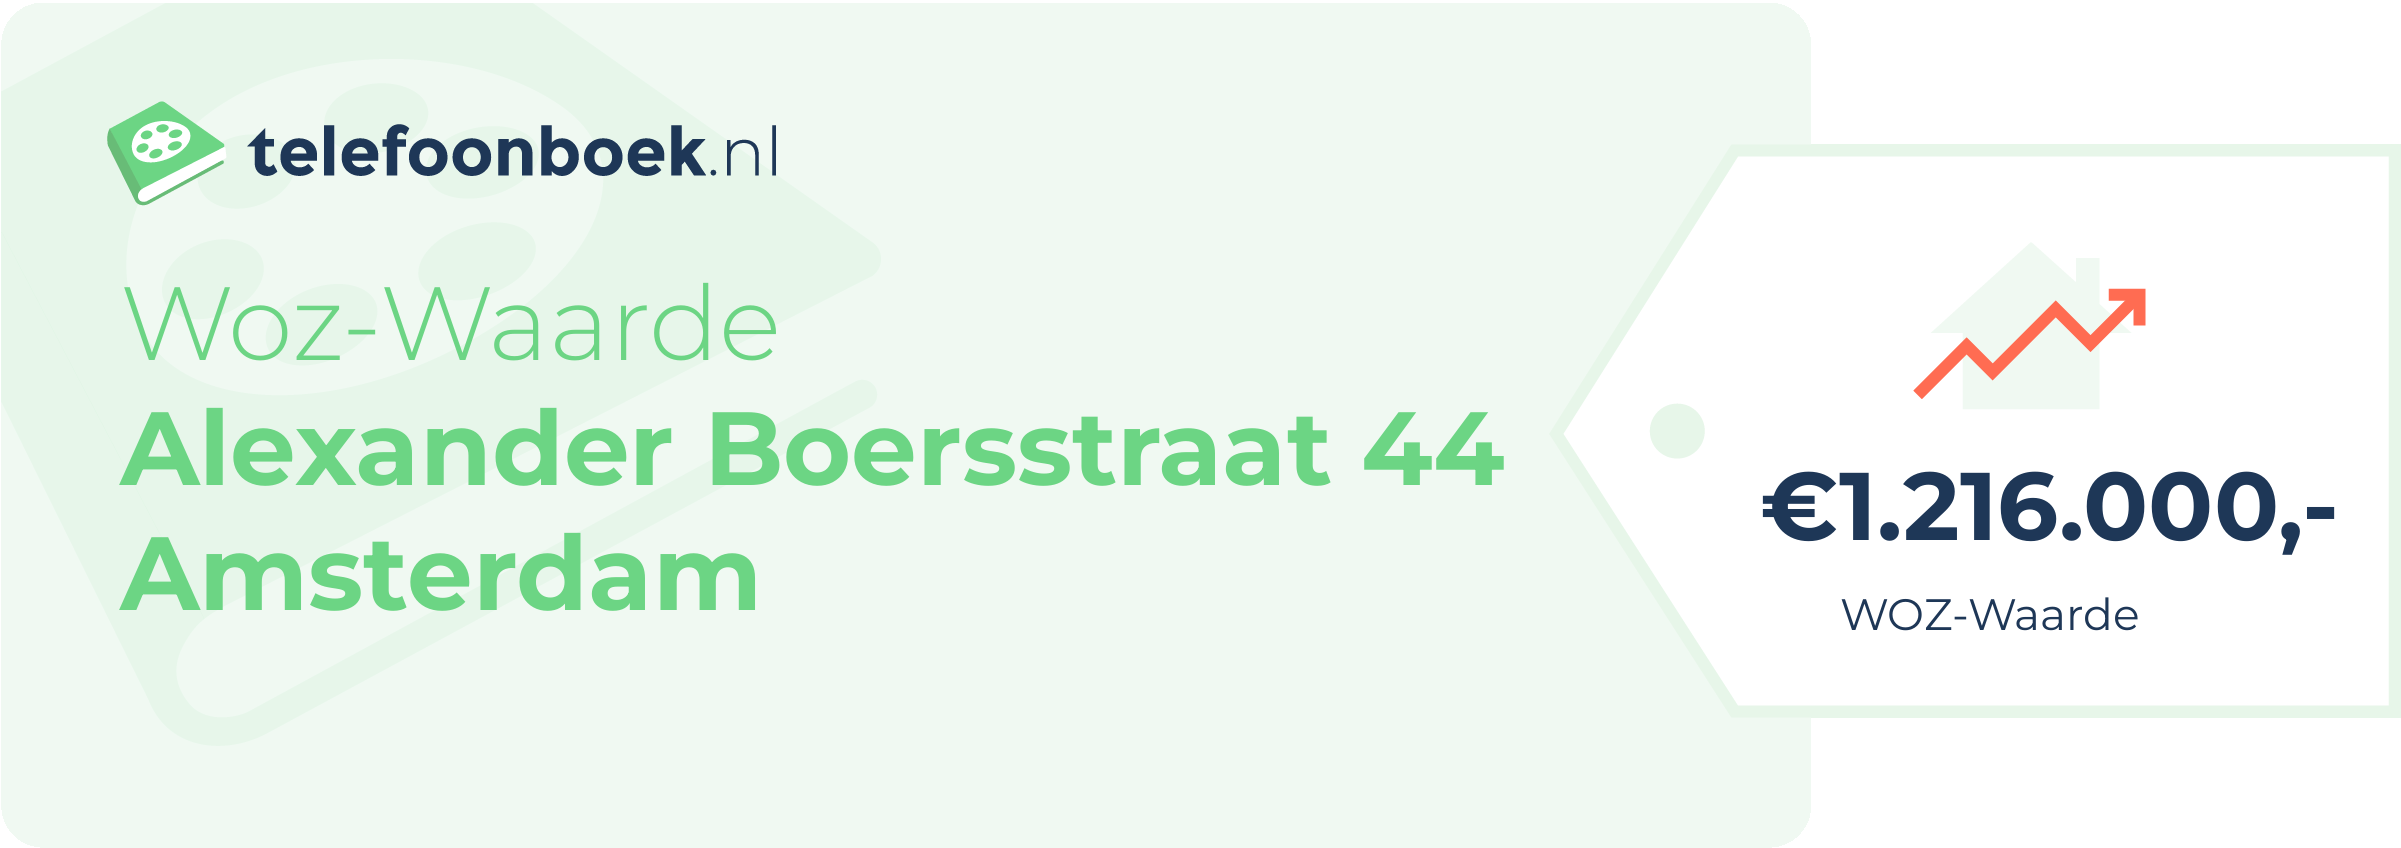 WOZ-waarde Alexander Boersstraat 44 Amsterdam